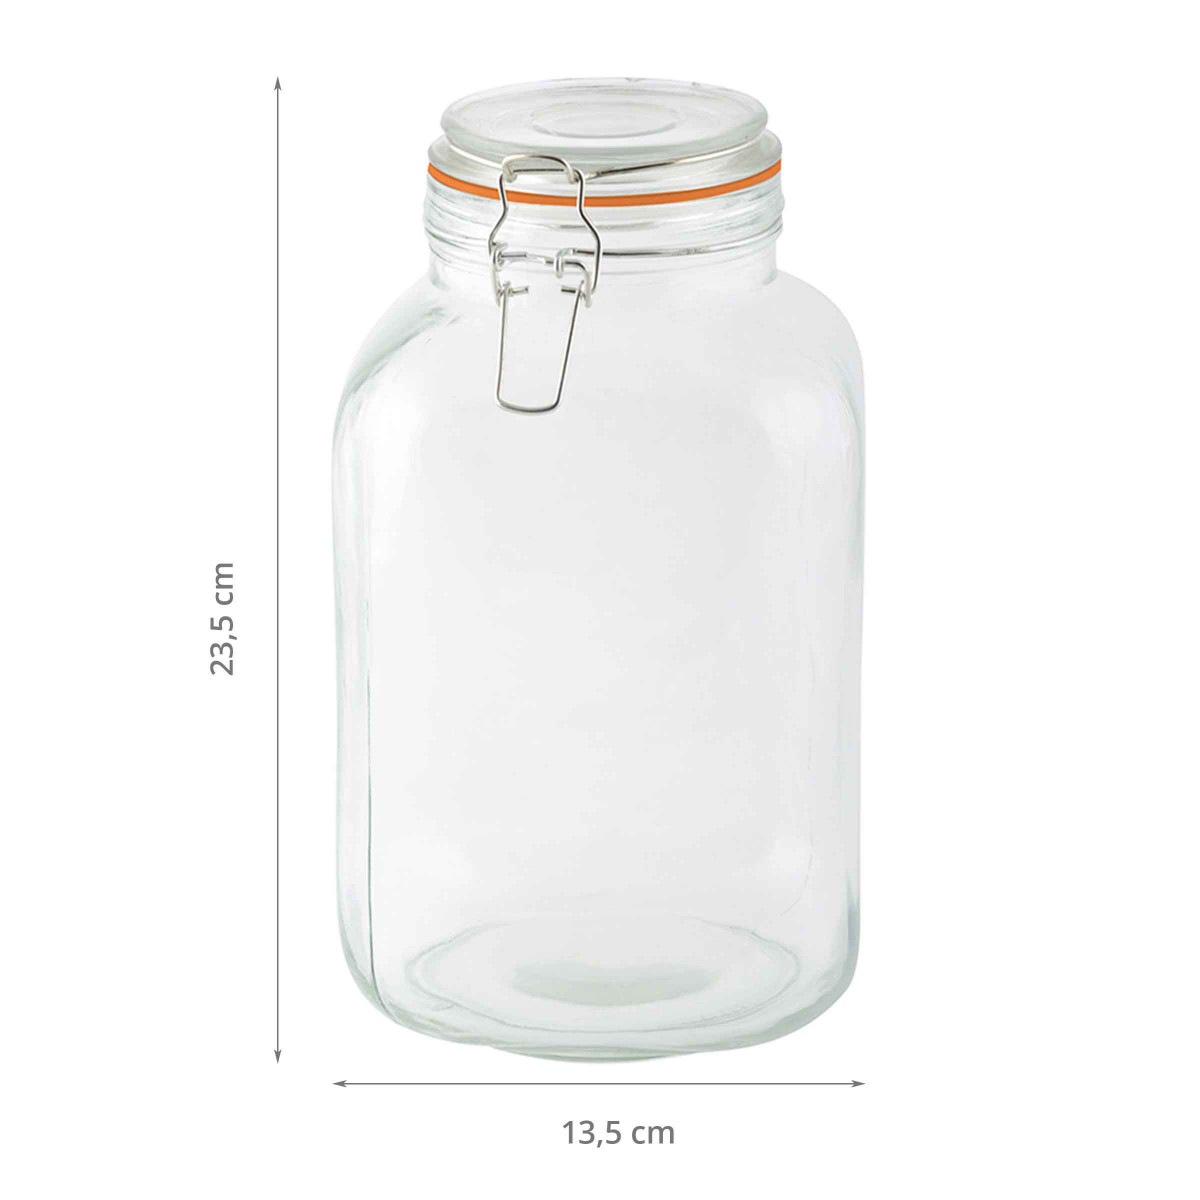 Econovo® Lot de 3 bocaux de conservation en verre avec couvercle strié  (1000 ml) - Empilables et hermétiques - Avec motif rainuré - Pour aliments